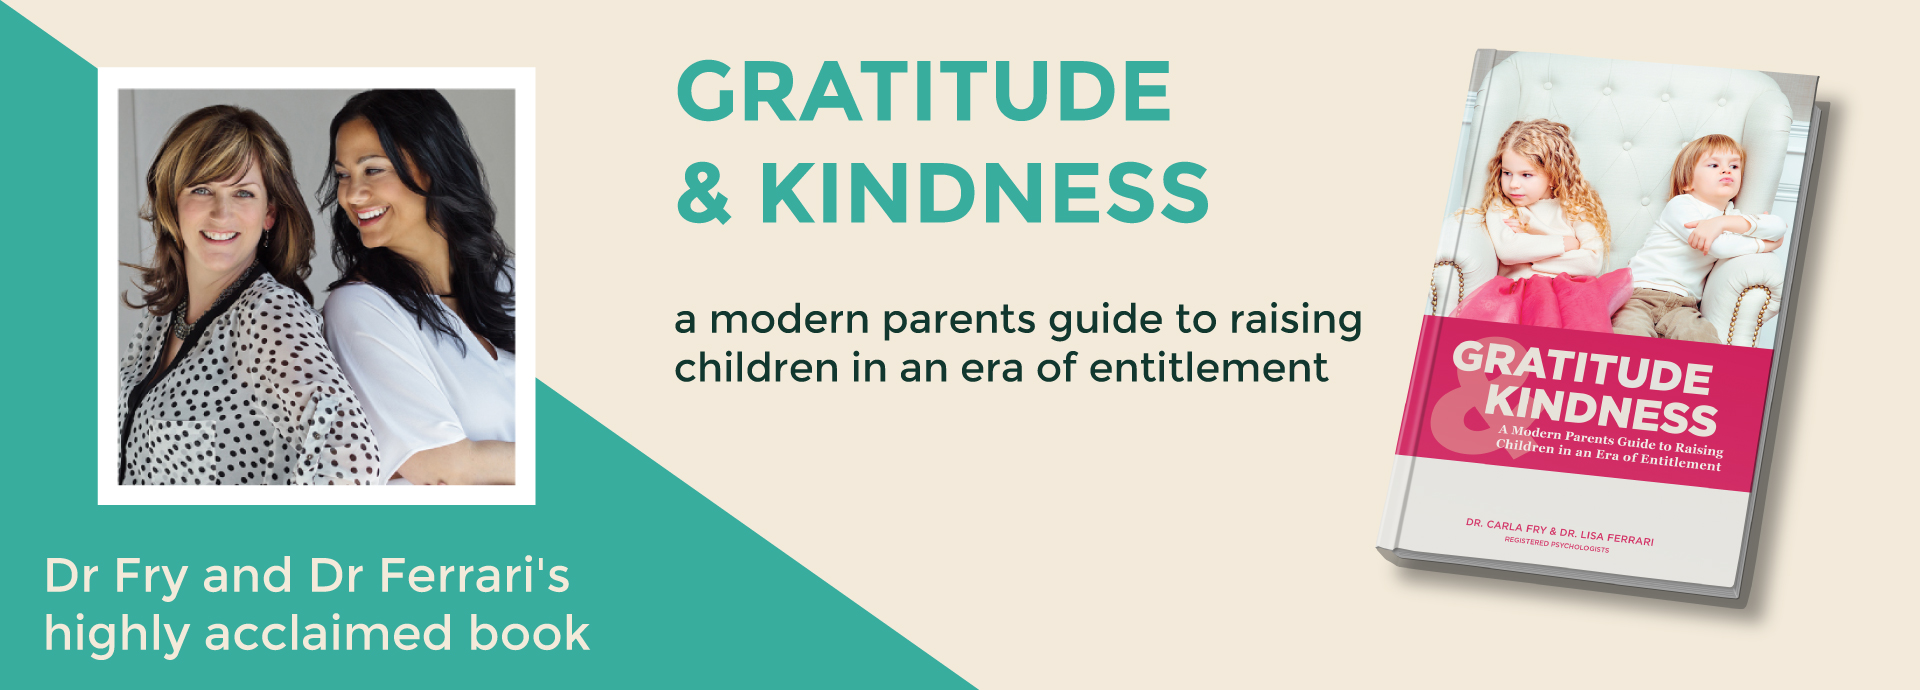 Gratitude & Kindness book